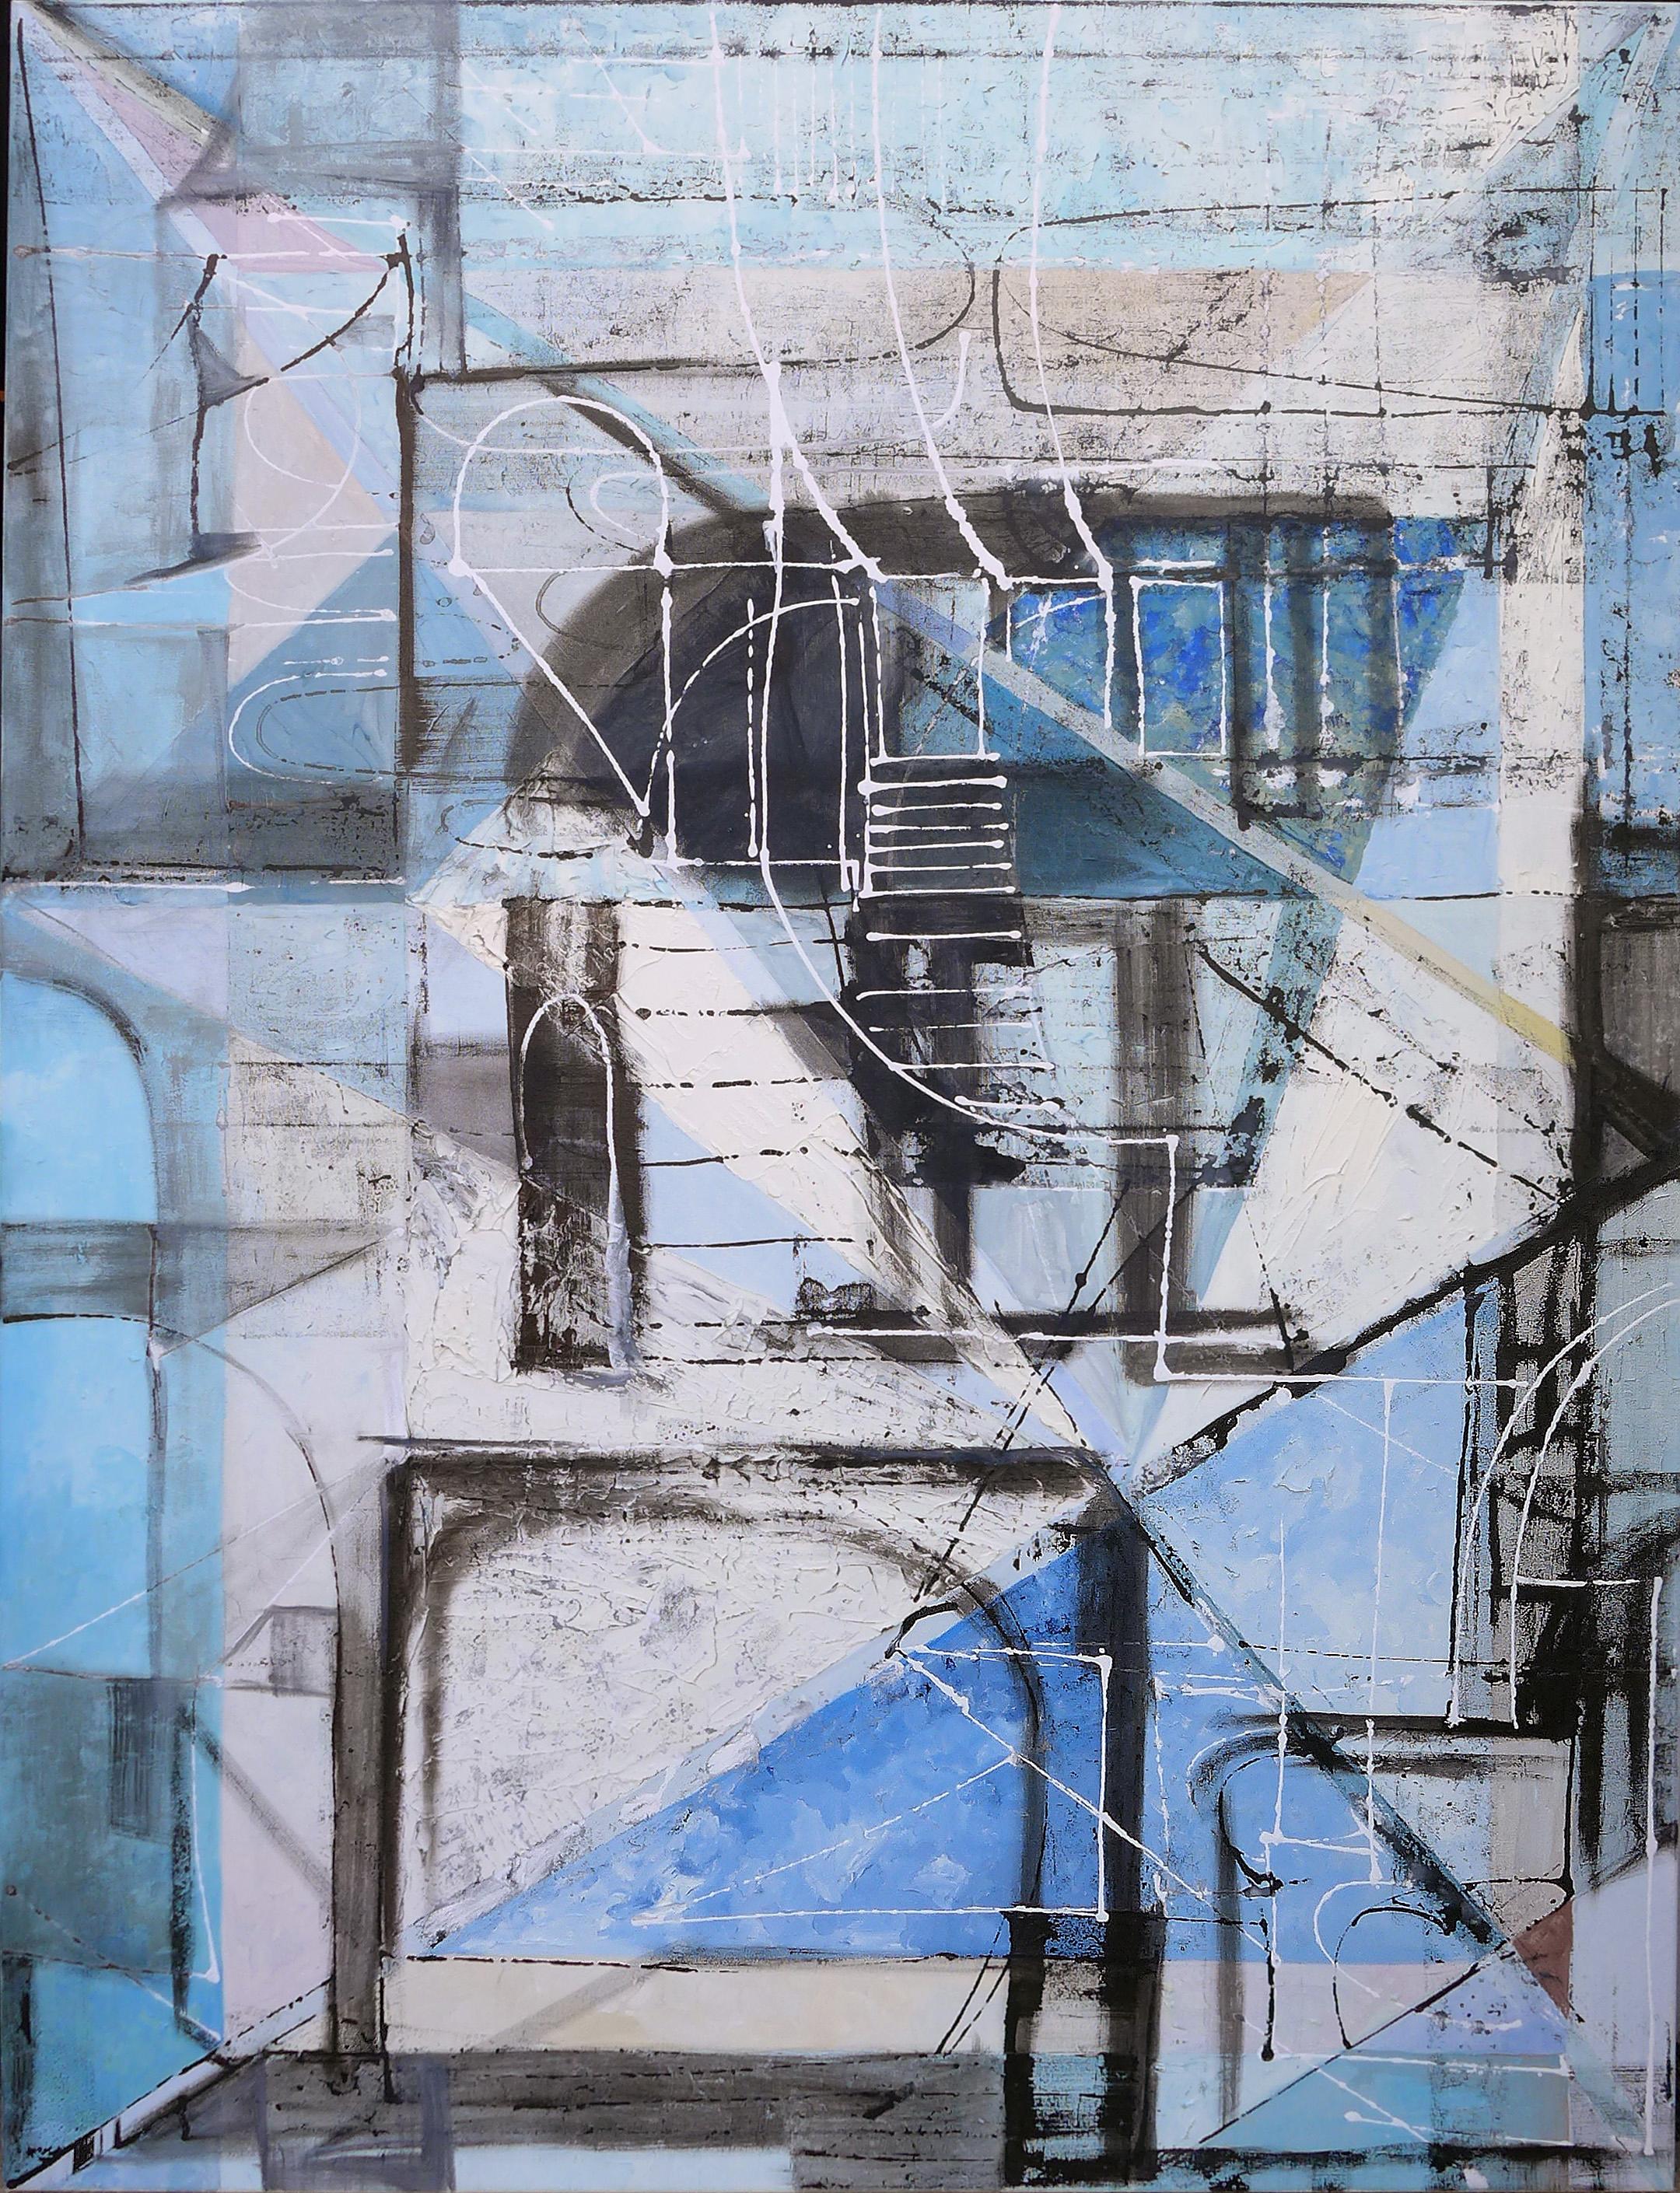 Lost City Blues 01 - Grande peinture expressionniste abstraite contemporaine en bleu